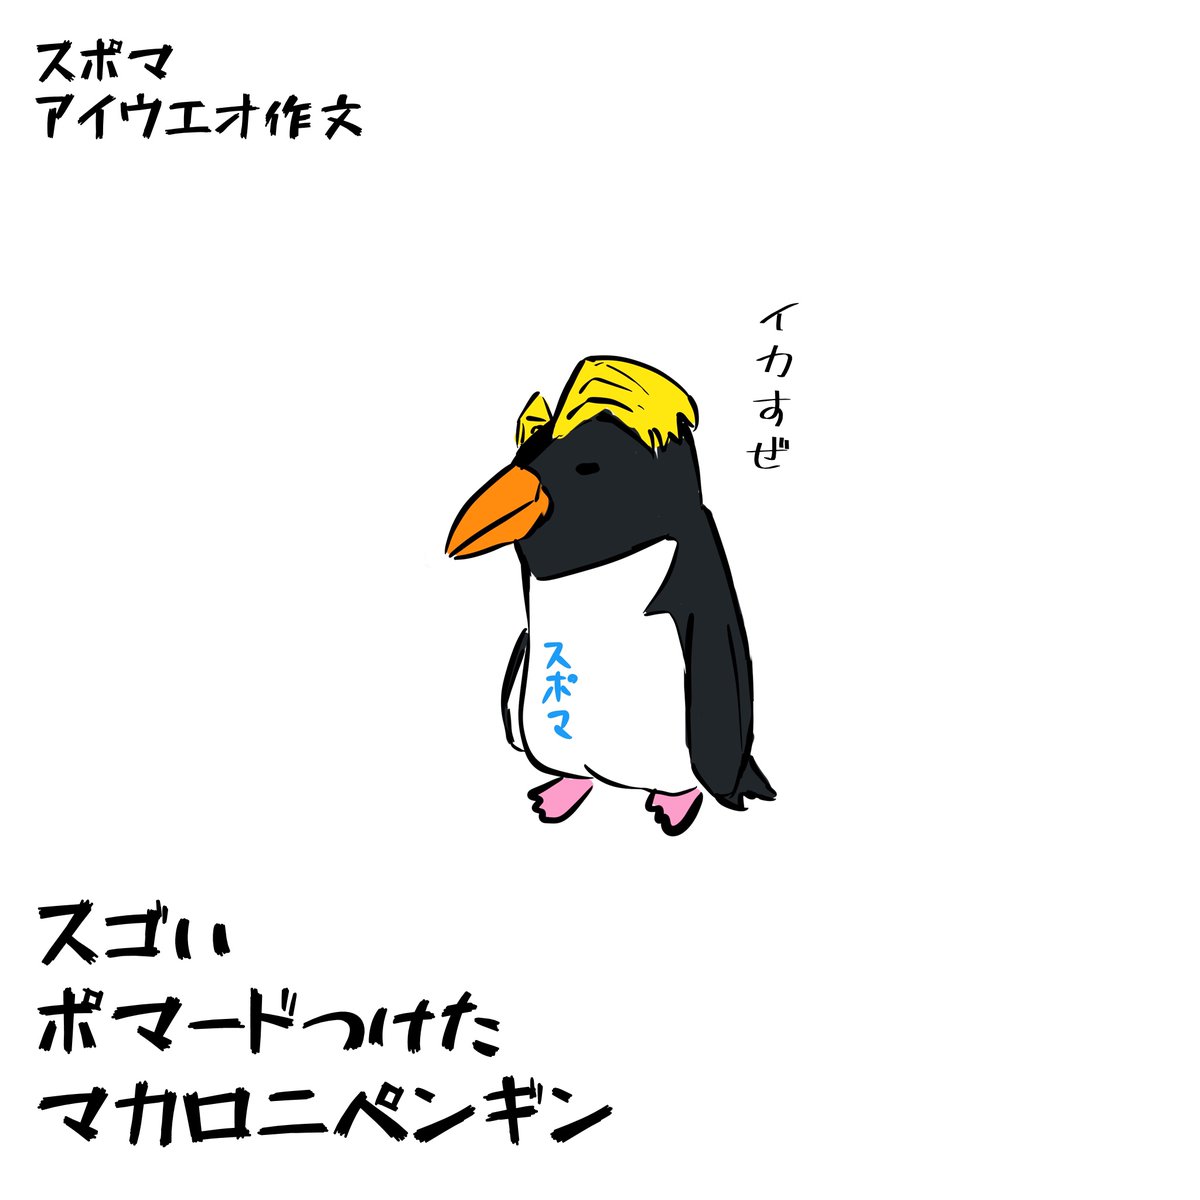 スポマ スポーツ漫画 イラストサービス スポマ あいうえお作文 スゴい ポマードつけた マカロニペンギン